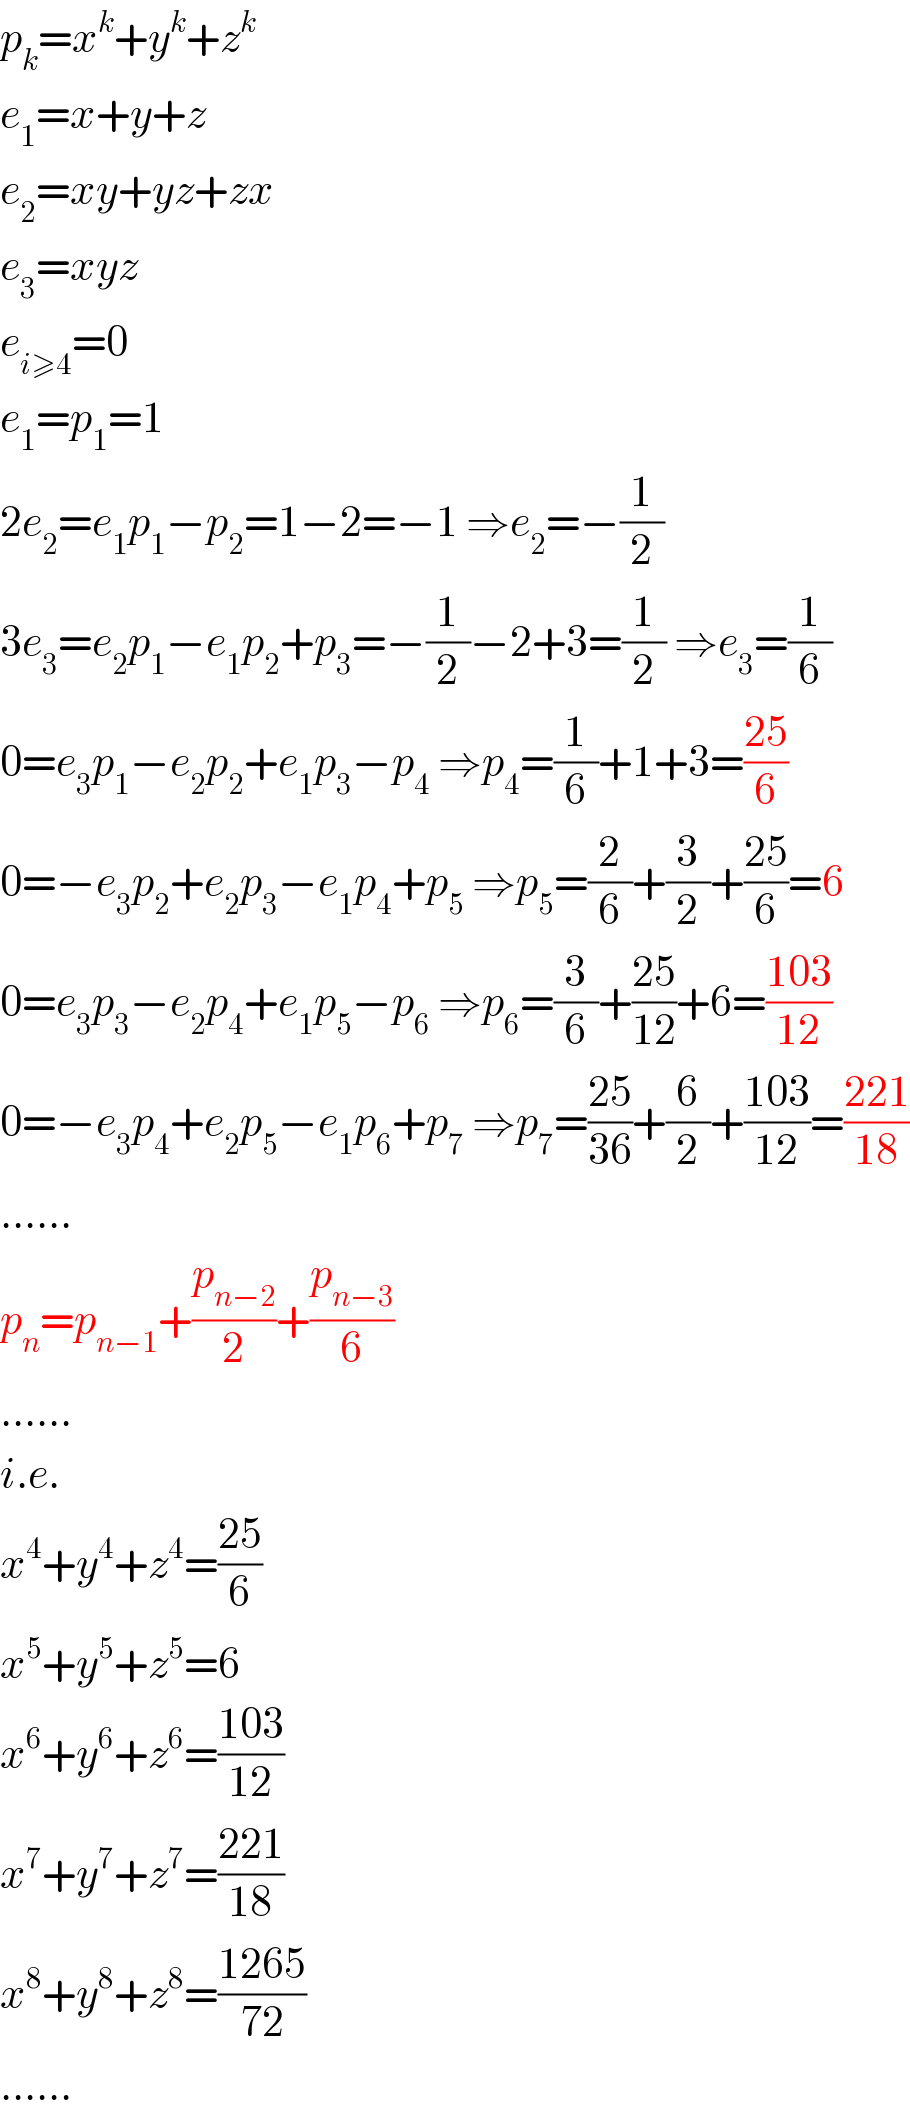 p_k =x^k +y^k +z^k   e_1 =x+y+z  e_2 =xy+yz+zx  e_3 =xyz  e_(i≥4) =0  e_1 =p_1 =1  2e_2 =e_1 p_1 −p_2 =1−2=−1 ⇒e_2 =−(1/2)  3e_3 =e_2 p_1 −e_1 p_2 +p_3 =−(1/2)−2+3=(1/2) ⇒e_3 =(1/6)  0=e_3 p_1 −e_2 p_2 +e_1 p_3 −p_4  ⇒p_4 =(1/6)+1+3=((25)/6)  0=−e_3 p_2 +e_2 p_3 −e_1 p_4 +p_5  ⇒p_5 =(2/6)+(3/2)+((25)/6)=6  0=e_3 p_3 −e_2 p_4 +e_1 p_5 −p_6  ⇒p_6 =(3/6)+((25)/(12))+6=((103)/(12))  0=−e_3 p_4 +e_2 p_5 −e_1 p_6 +p_7  ⇒p_7 =((25)/(36))+(6/2)+((103)/(12))=((221)/(18))  ......  p_n =p_(n−1) +(p_(n−2) /2)+(p_(n−3) /6)  ......  i.e.  x^4 +y^4 +z^4 =((25)/6)  x^5 +y^5 +z^5 =6  x^6 +y^6 +z^6 =((103)/(12))  x^7 +y^7 +z^7 =((221)/(18))  x^8 +y^8 +z^8 =((1265)/(72))  ......  